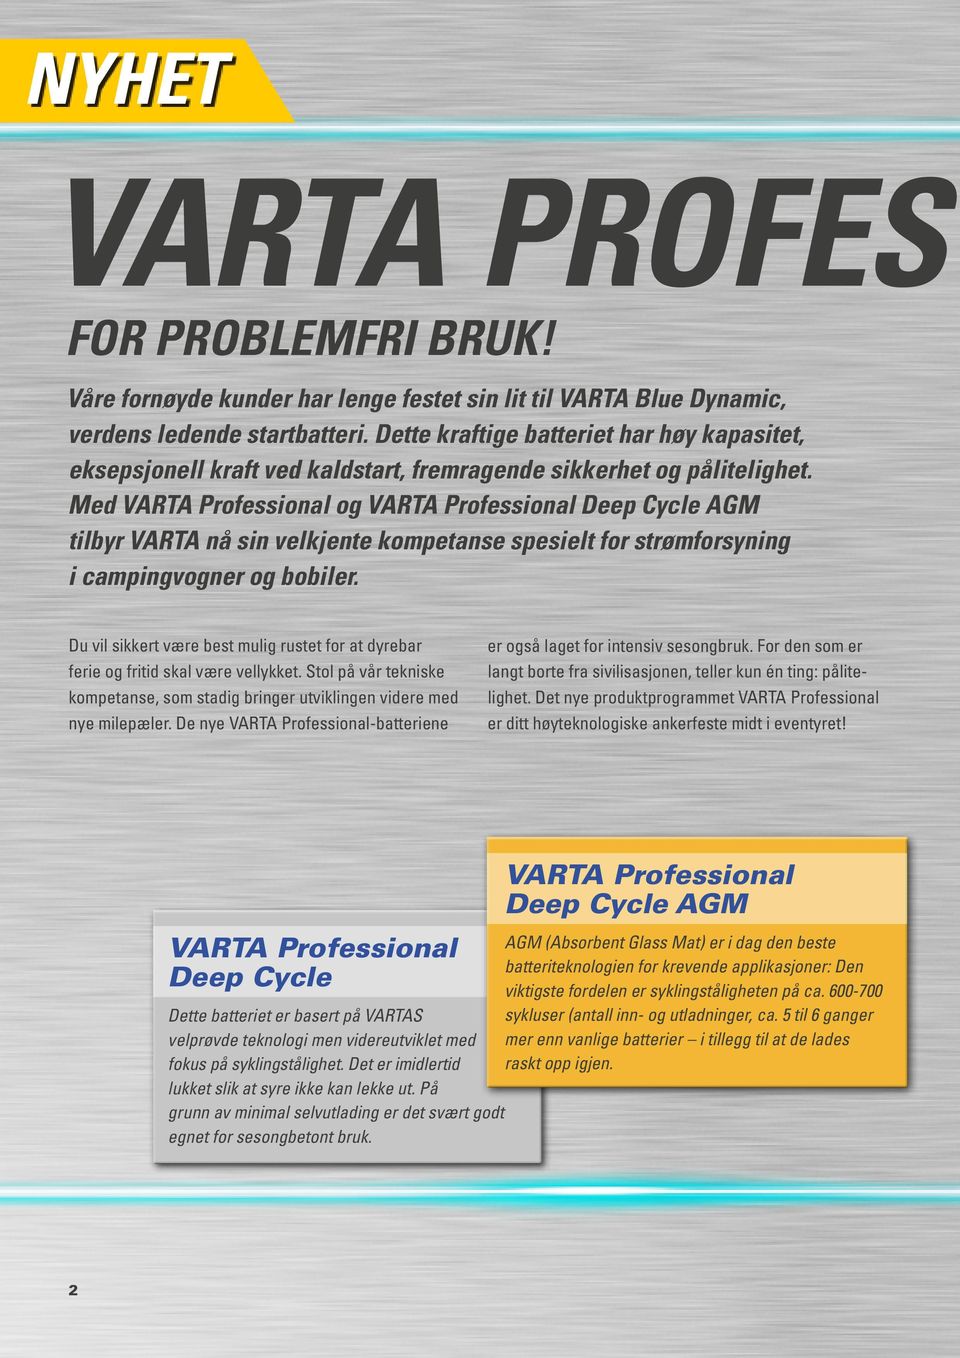 Med VARTA Professional og VARTA Professional Deep Cycle AGM tilbyr VARTA nå sin velkjente kompetanse spesielt for strømforsyning i campingvogner og bobiler.